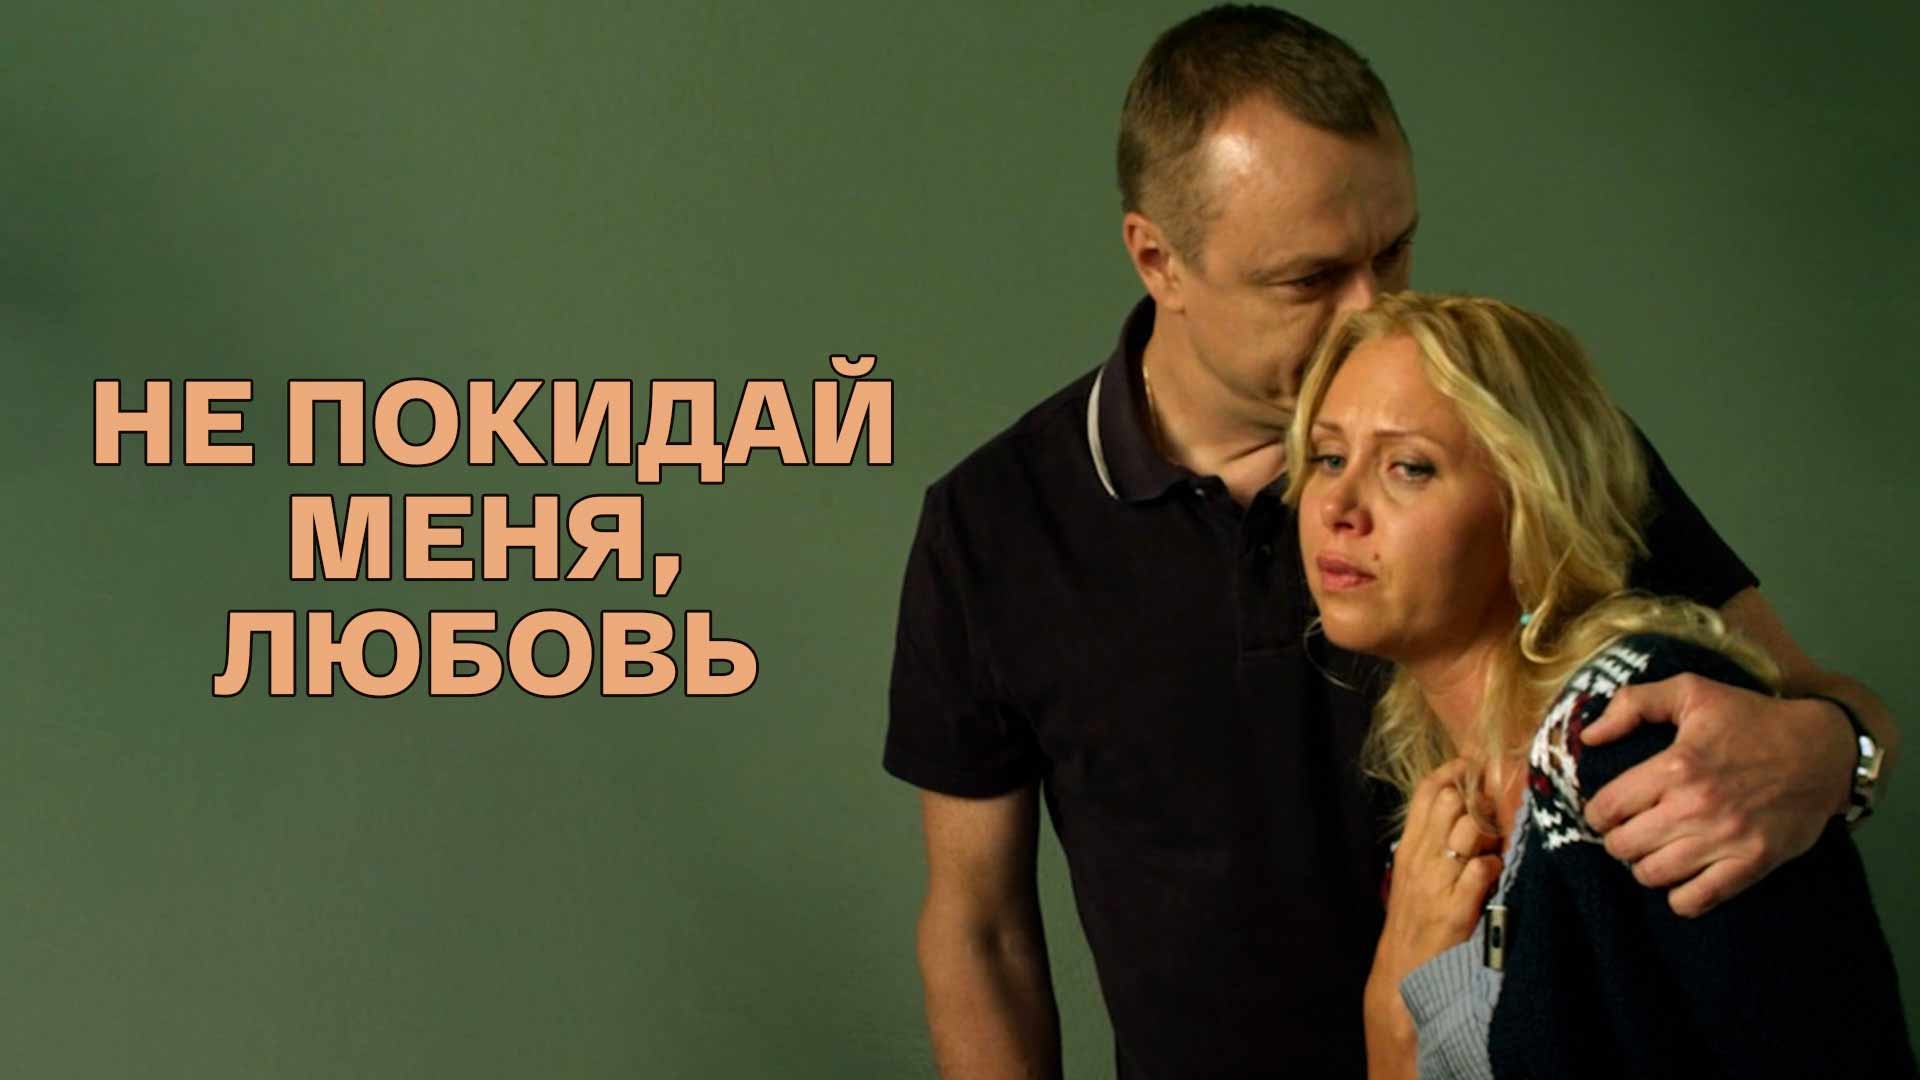 мелодрама о любви и измене русская фото 114